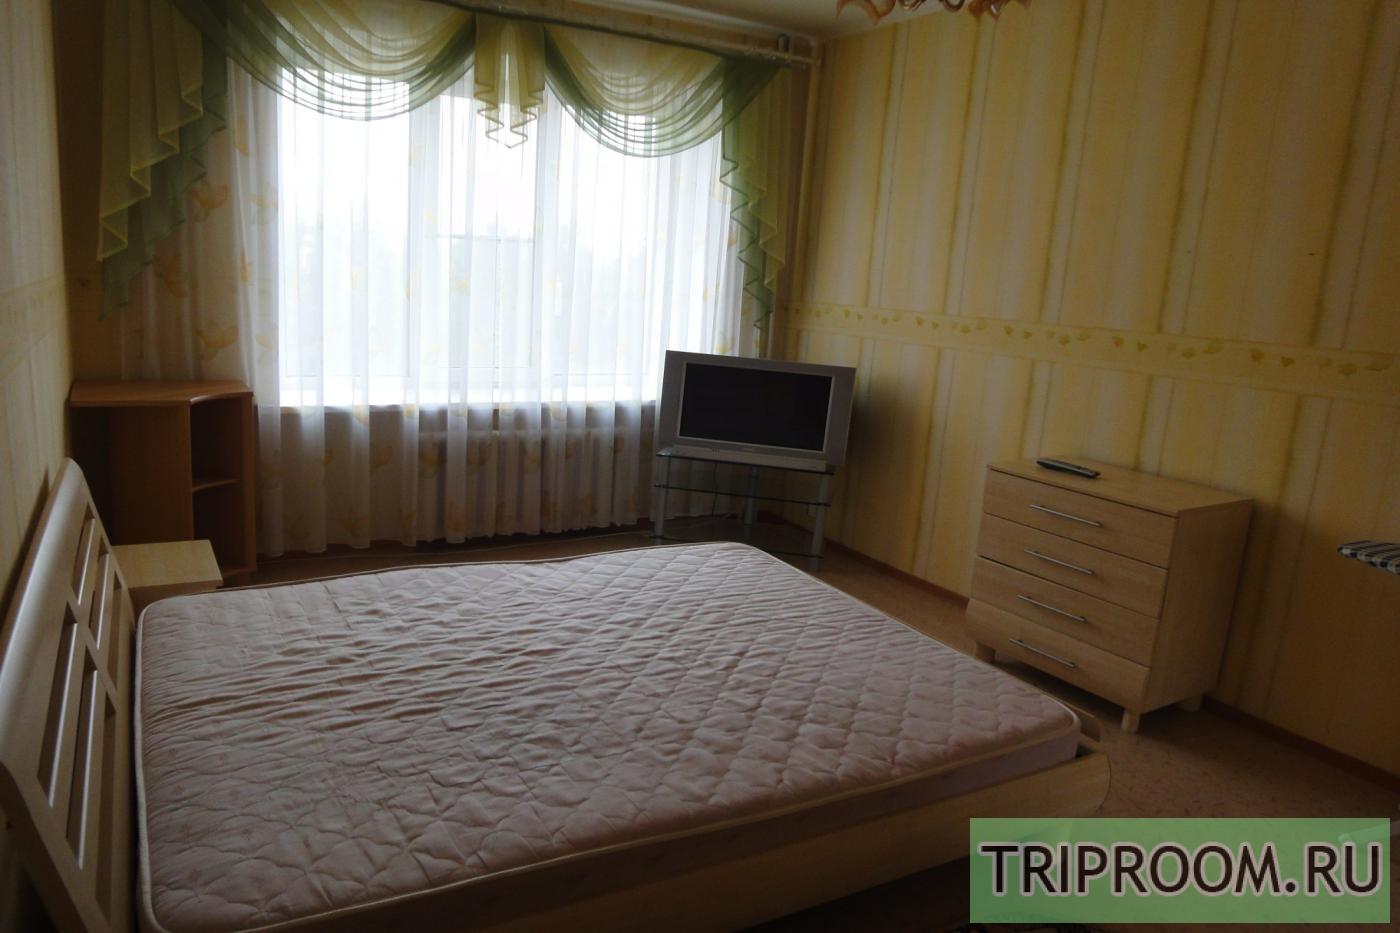 2-комнатная квартира посуточно (вариант № 11575), ул. Комсомольский проспект, фото № 3